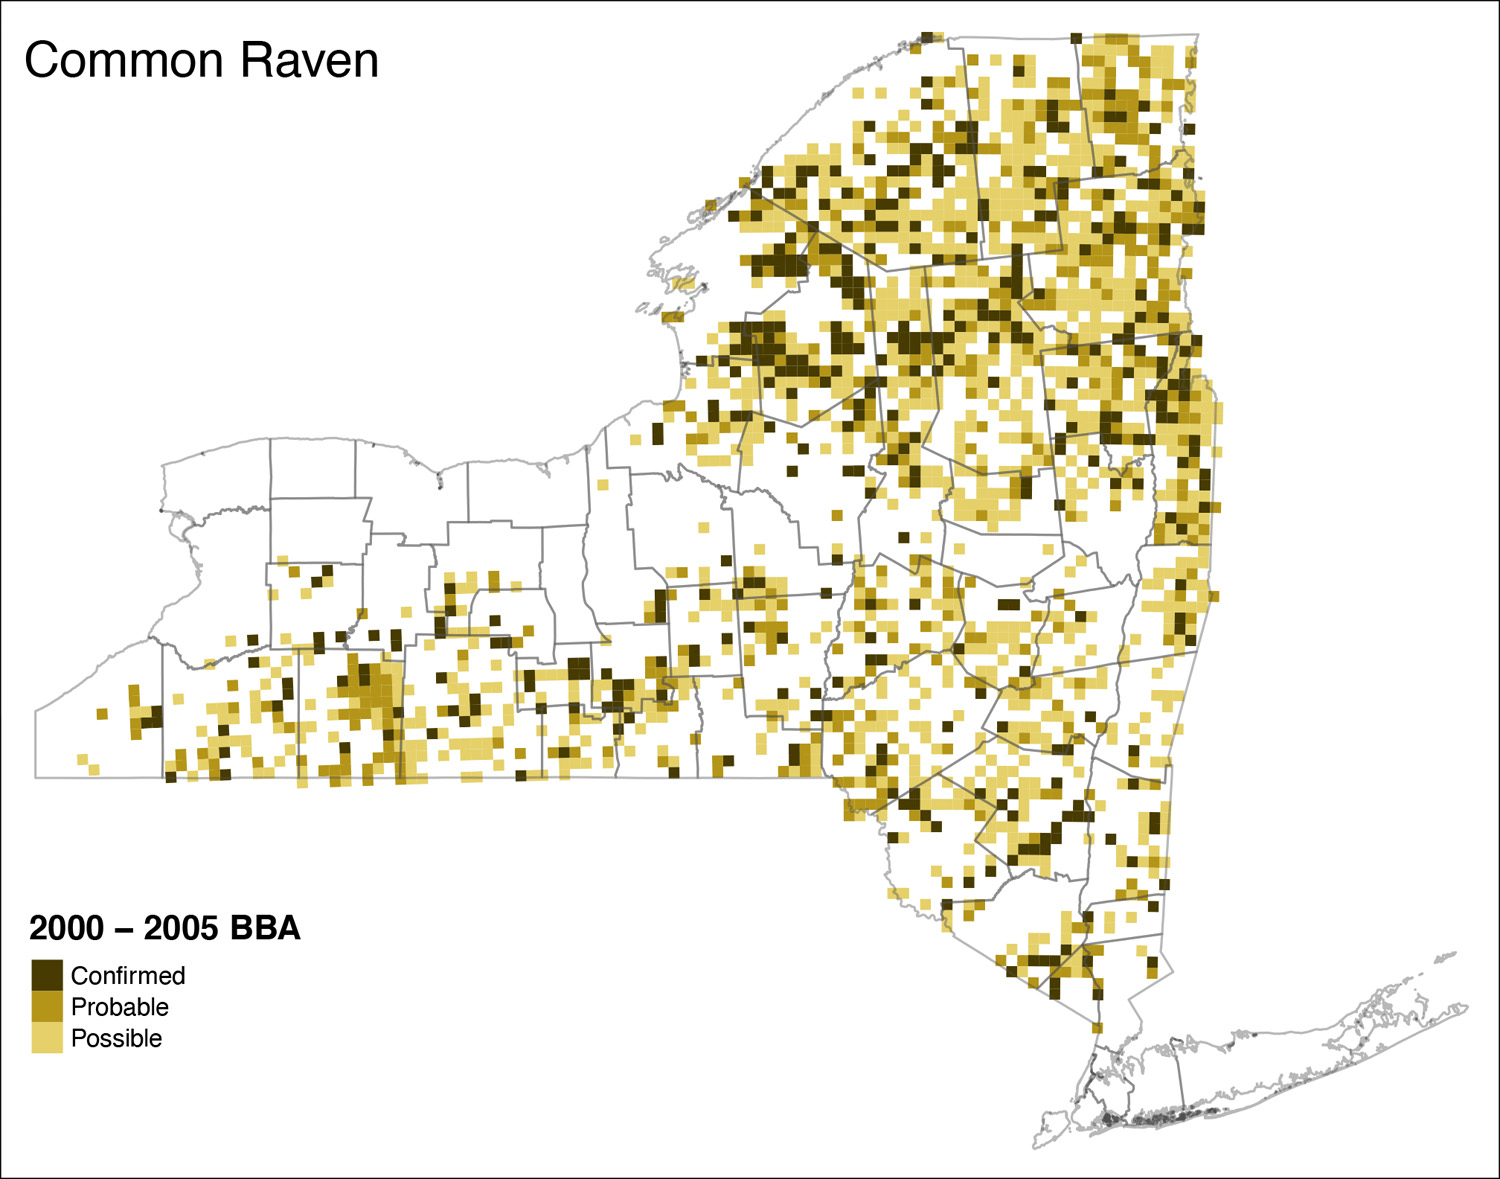 Common Raven Atlas 2 Distribution